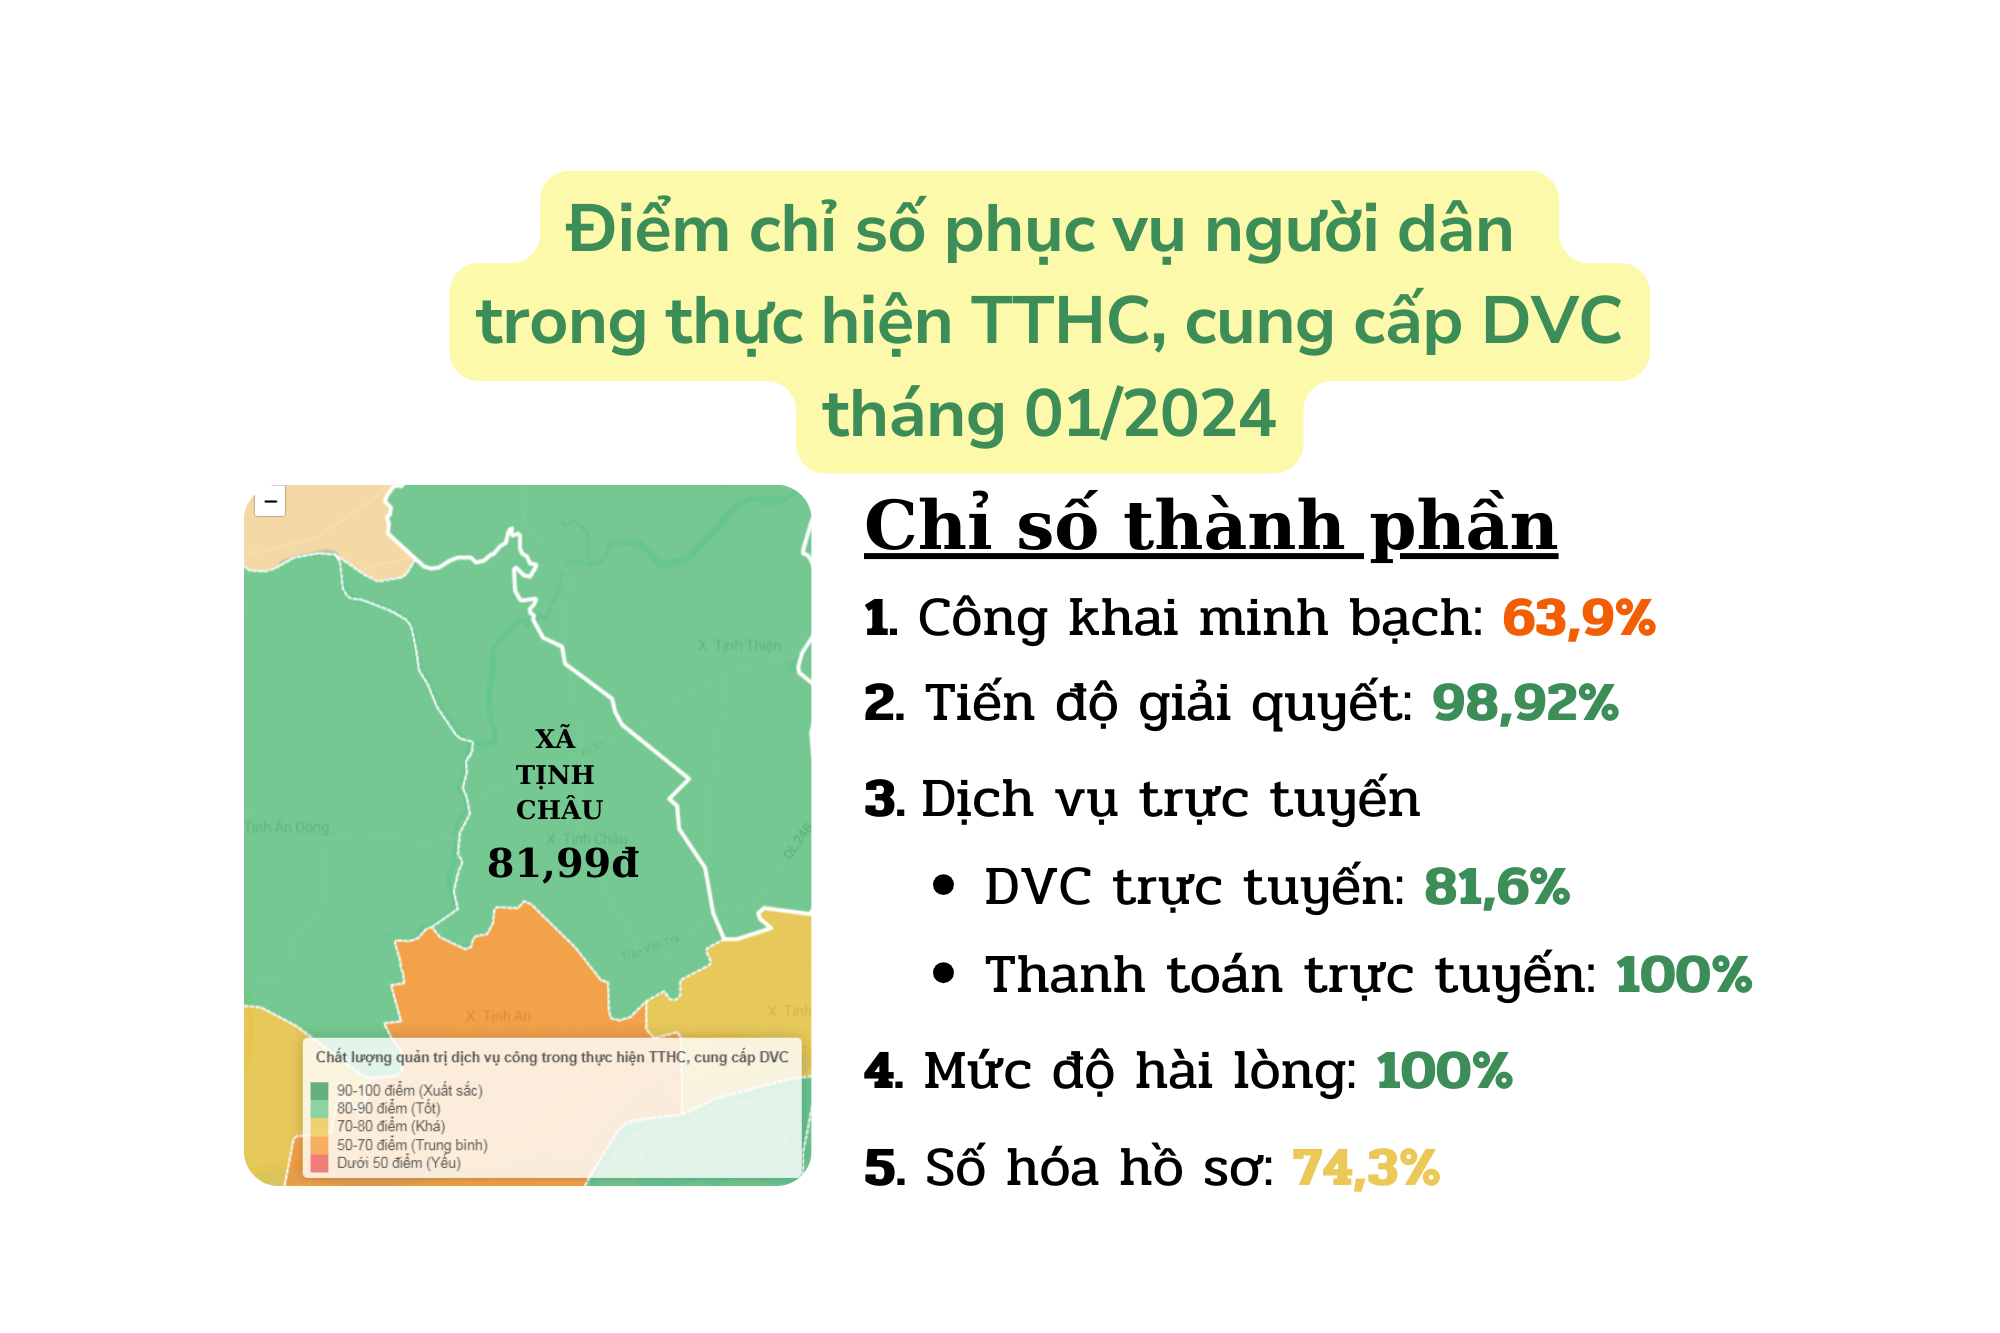 Xã Tịnh Châu xếp loại tốt, đạt 81,99 điểm chỉ số phục vụ người dân trong thực hiện TTHC, DVC tháng 01/2024